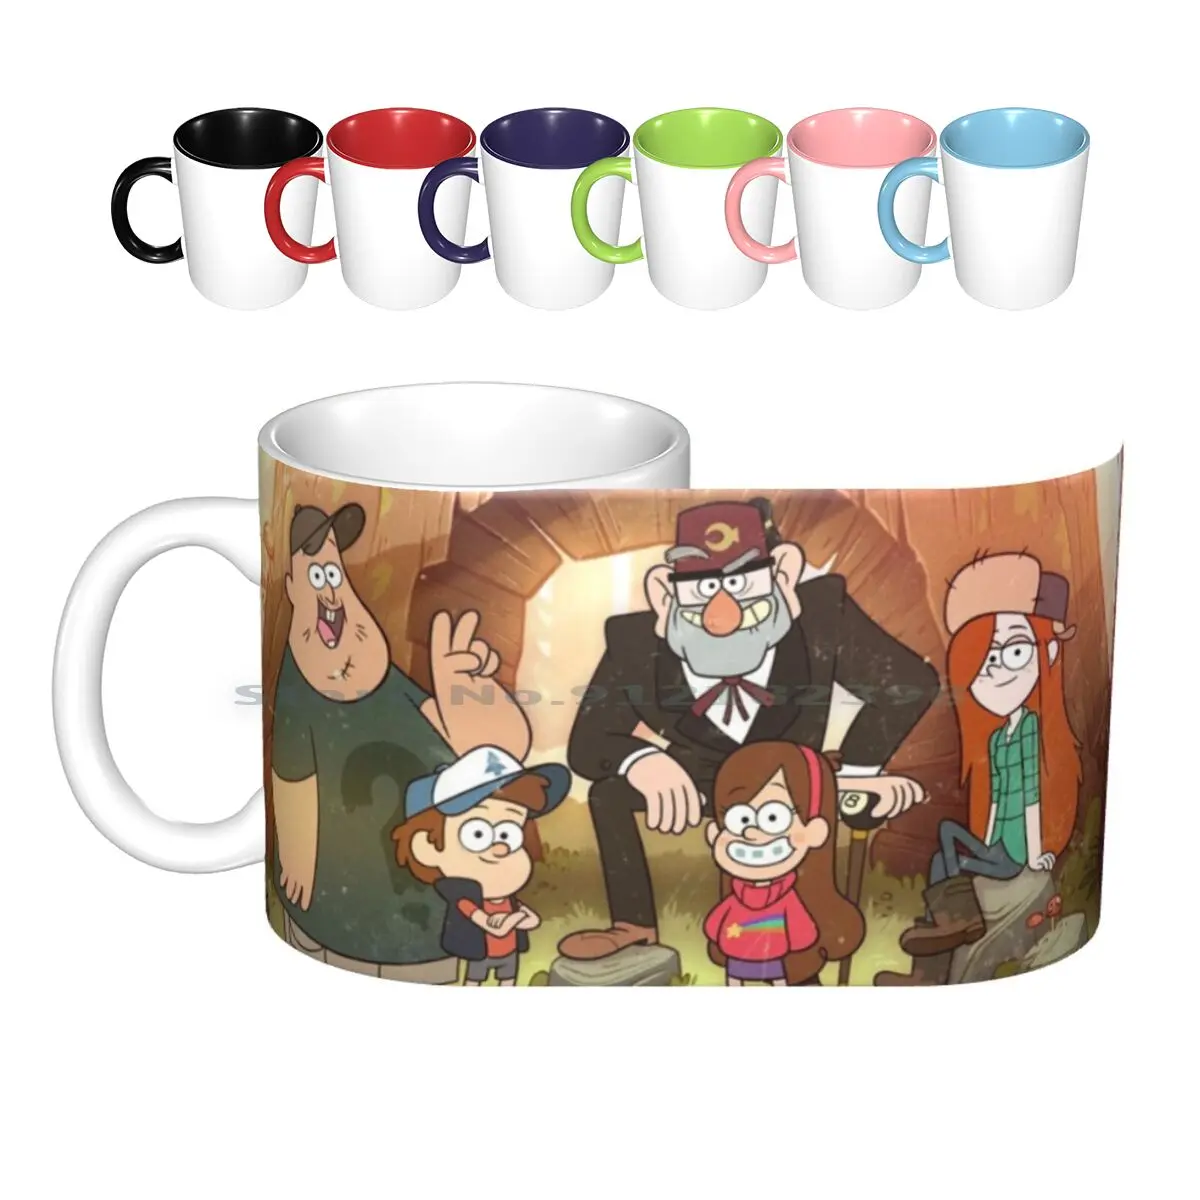 

Семейные керамические кружки, кофейные чашки, кружка для чая с молоком, семья, папа, мать, серия комиксов, мультфильмы, улыбки, радость, счаст...